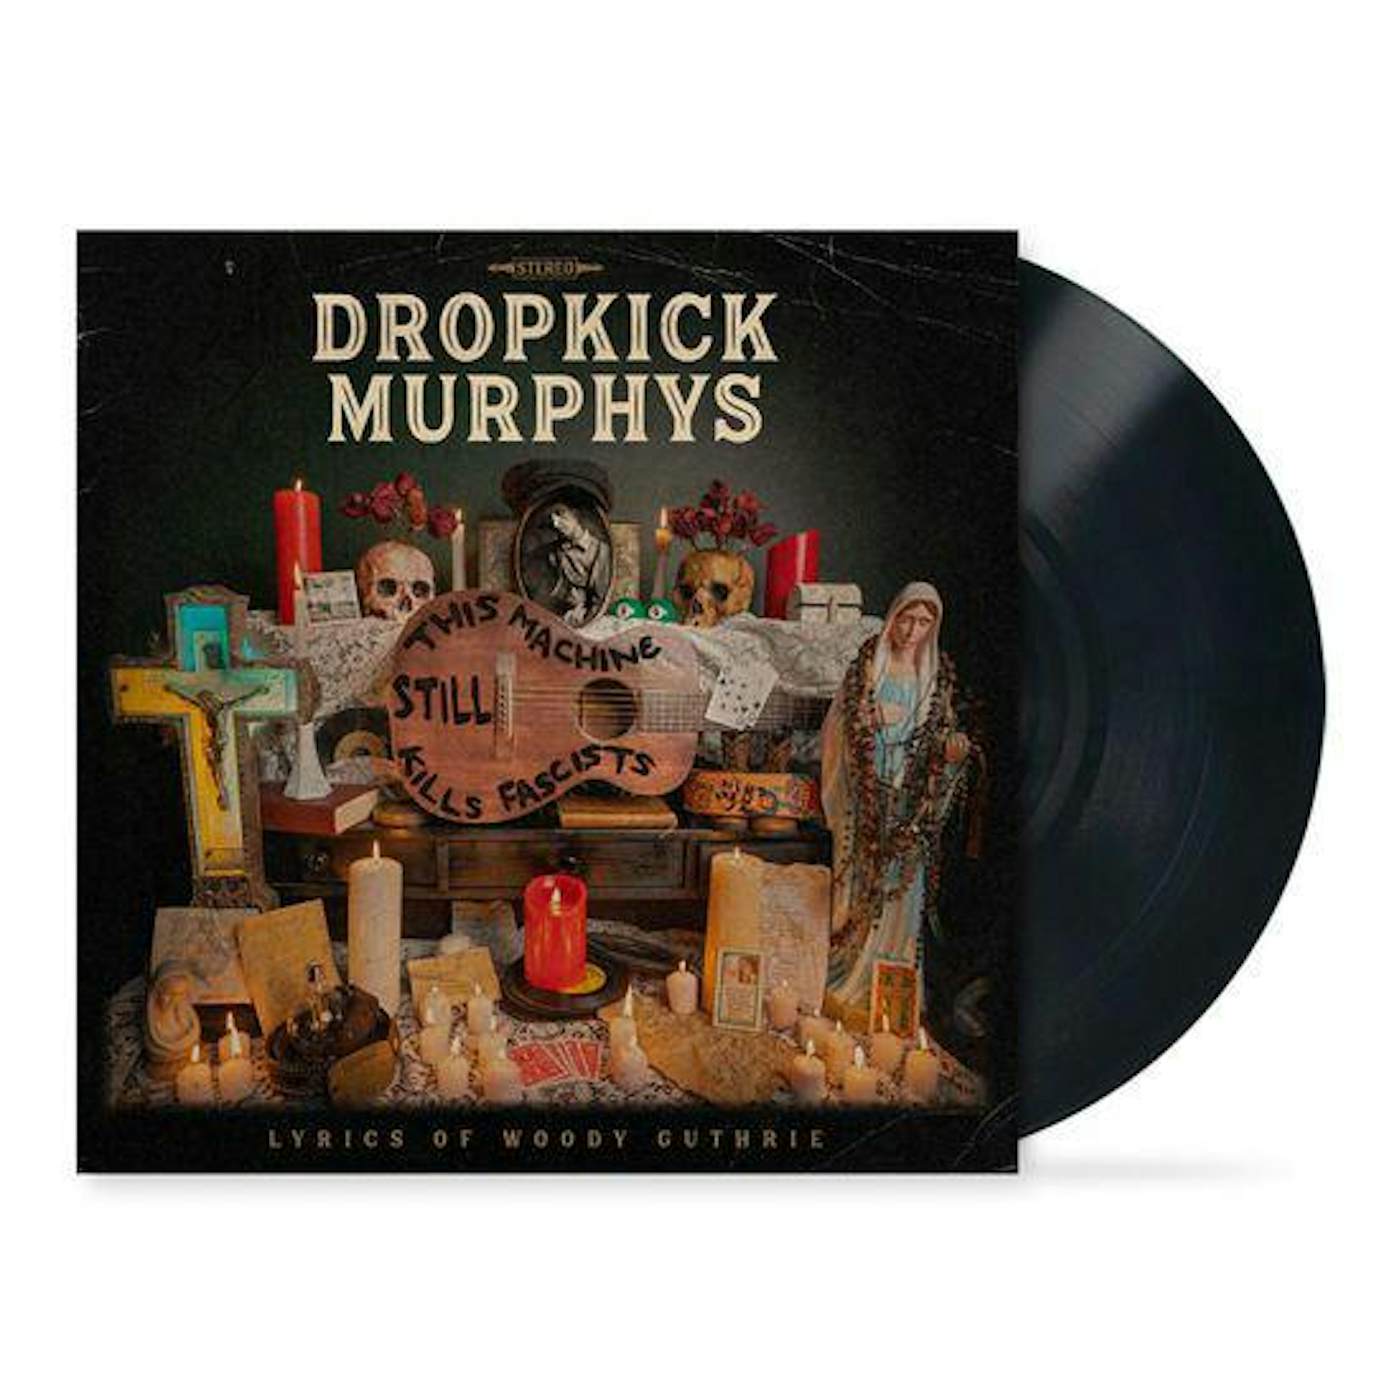 Dropkick Murphys This Machine Still Kills Fascists Vinyl Record